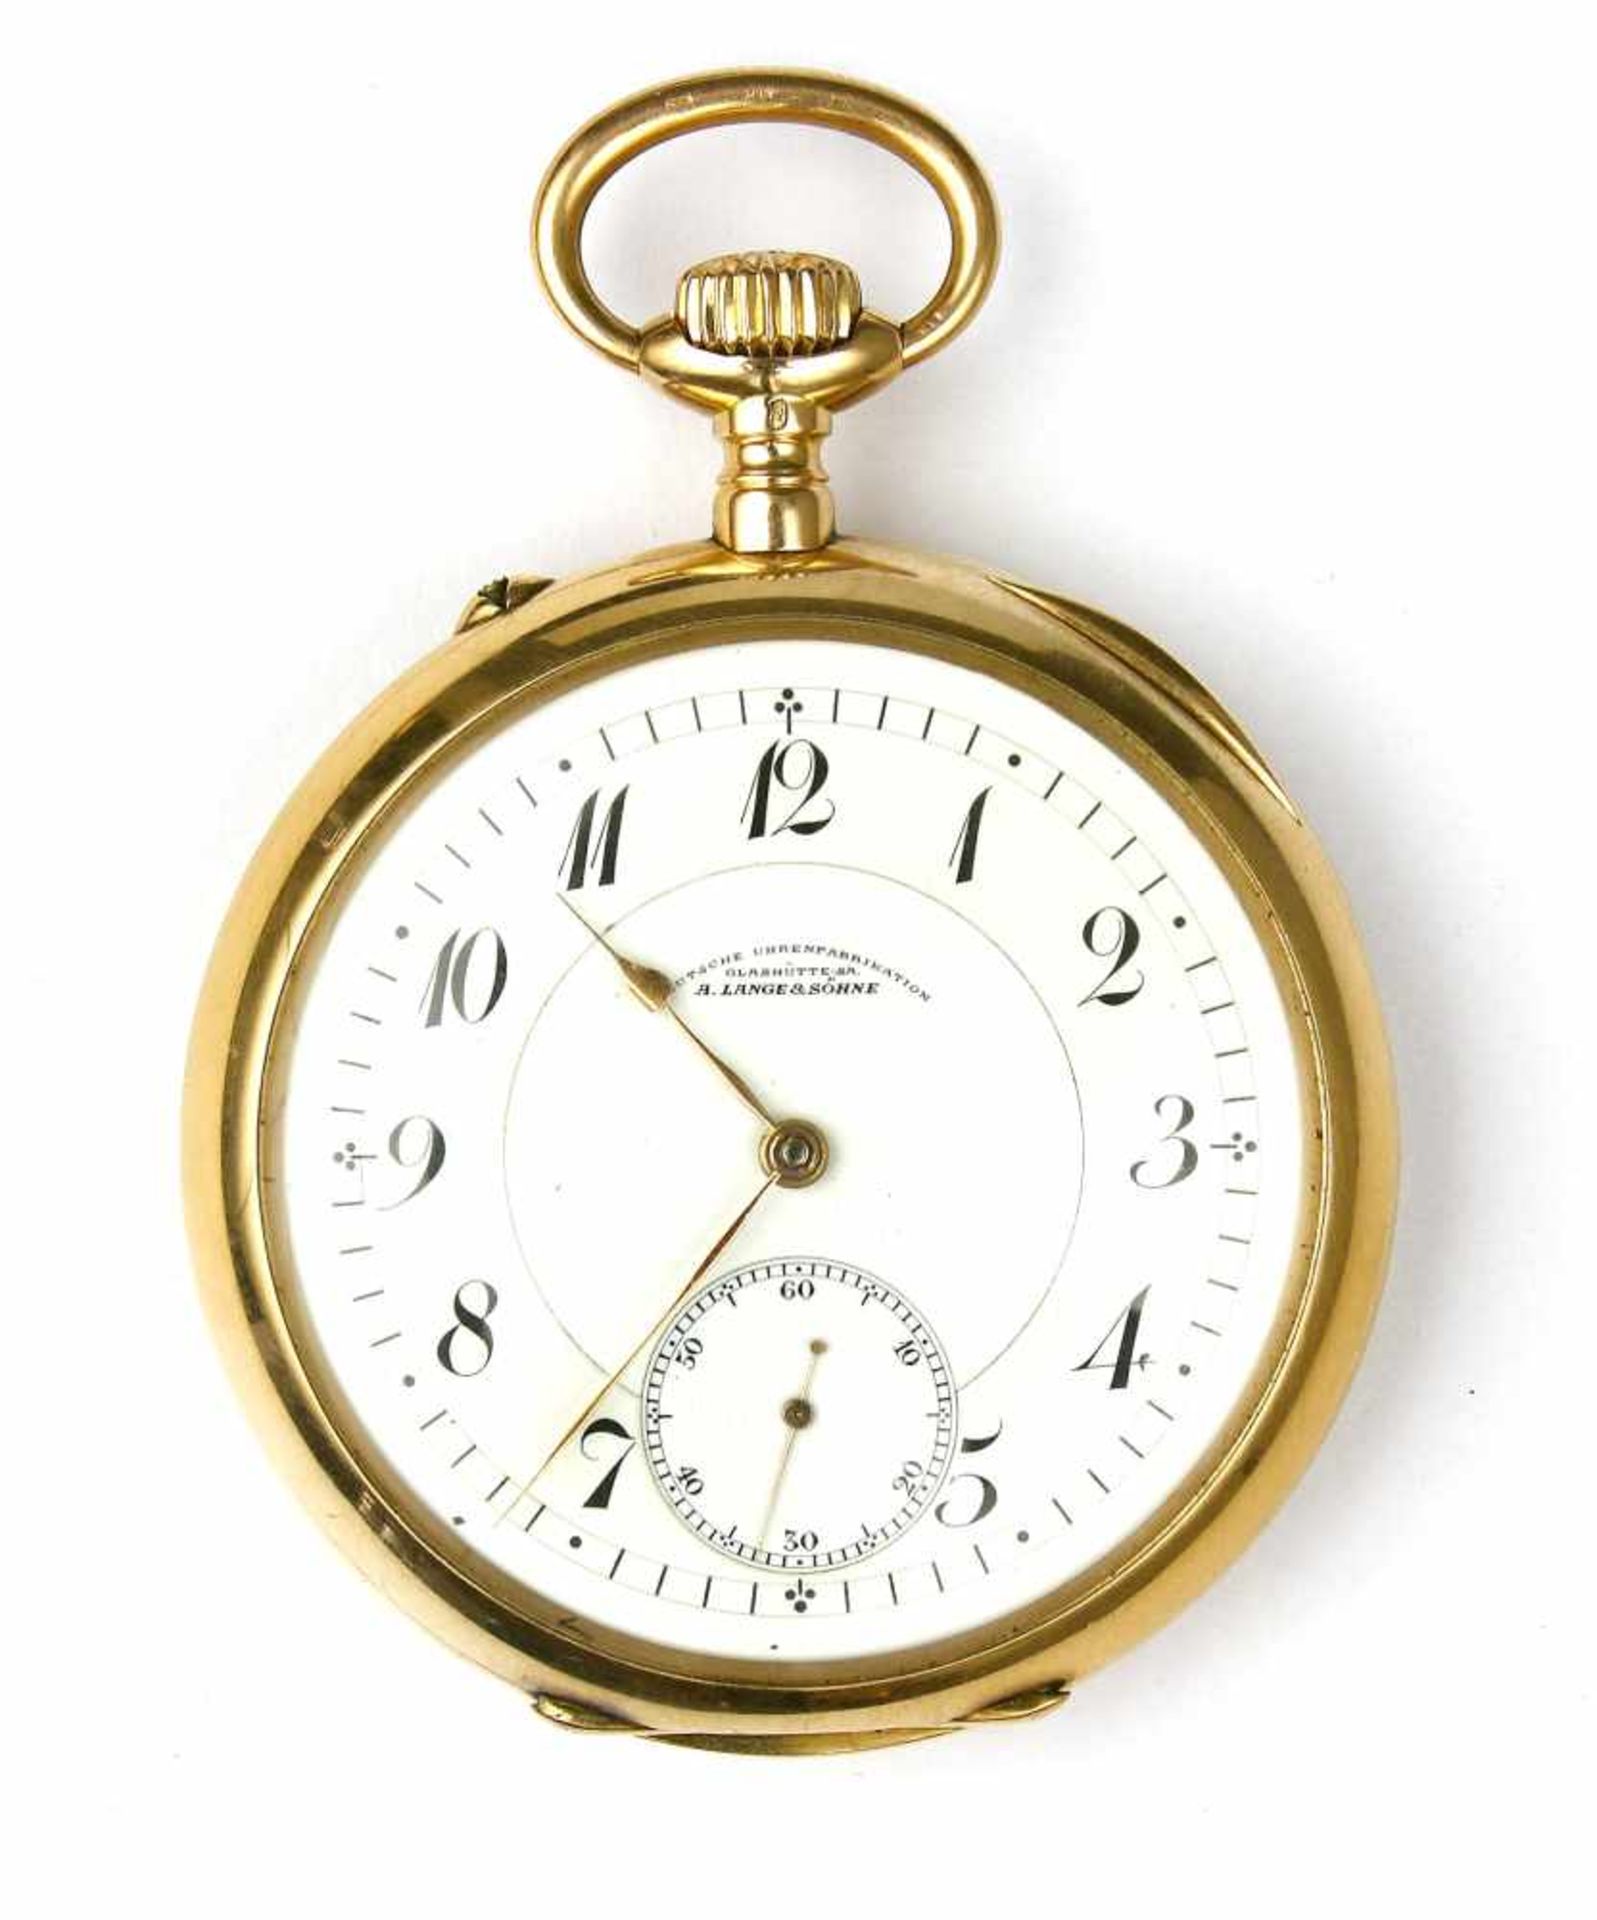 Uhr, Taschenuhr, 585er GG., A. Lange & Söhne, 1908 - 1912Im Original-Kasten mit Original-